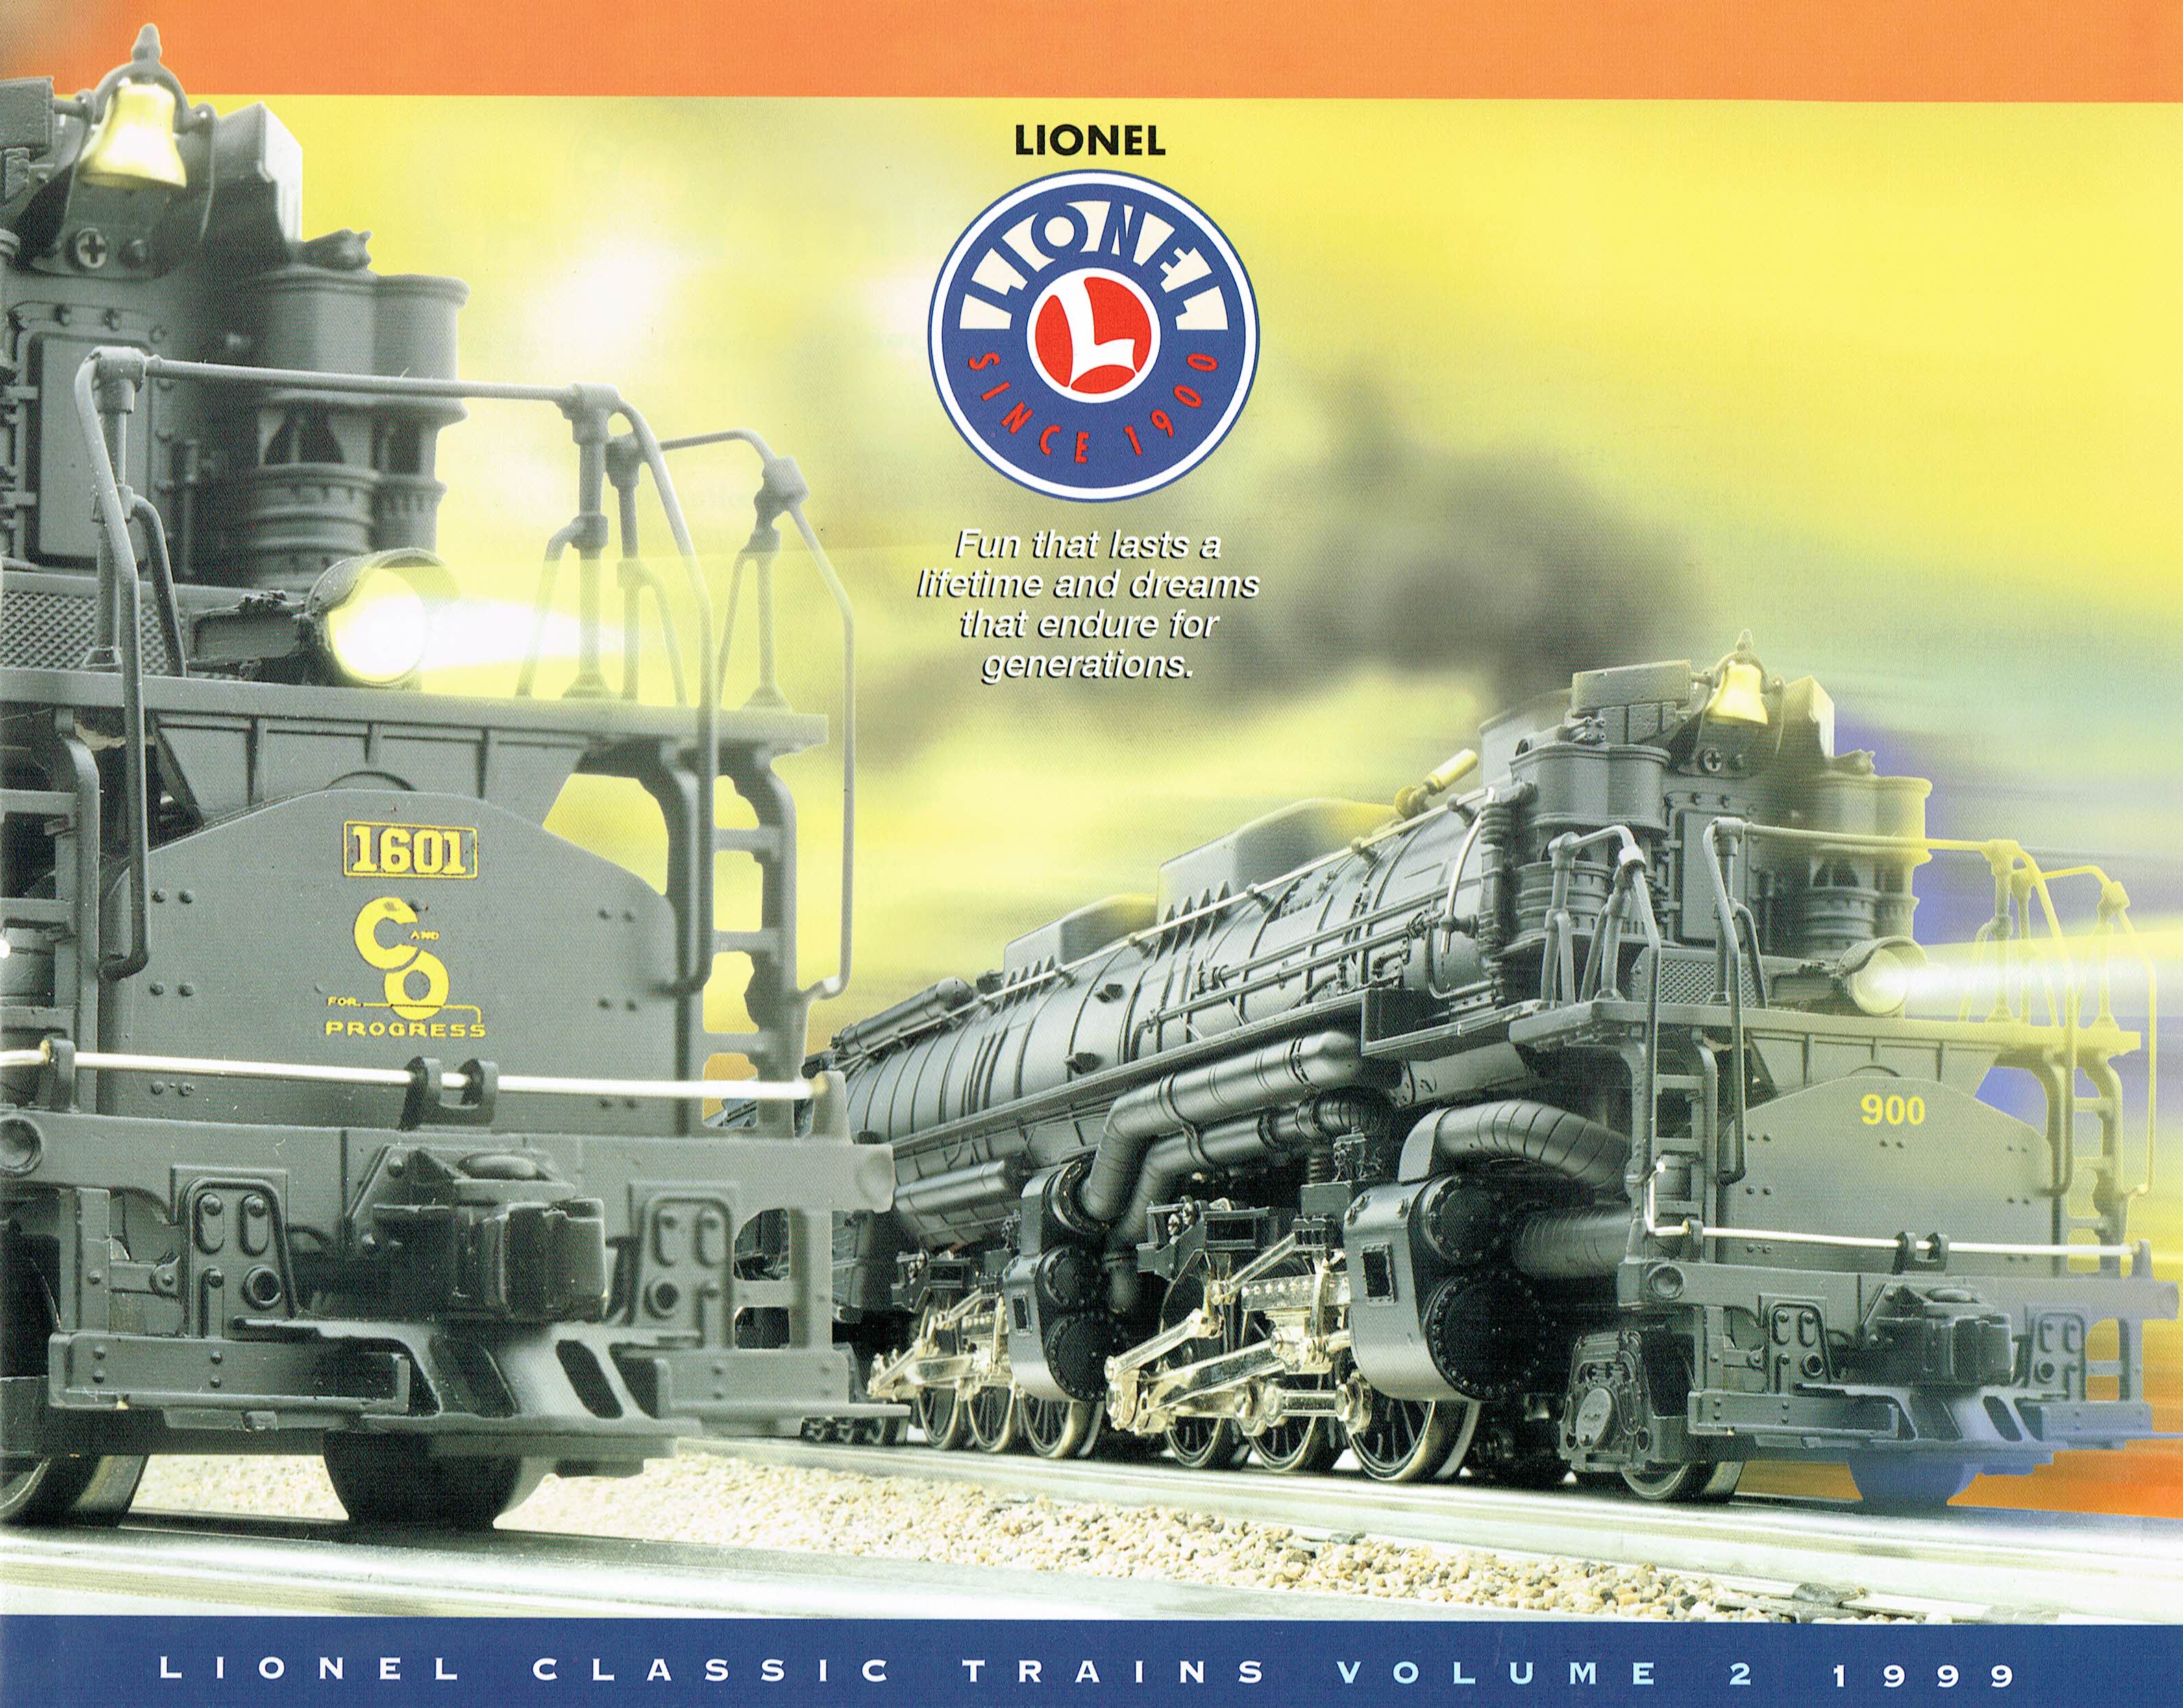 Lionel 1999 Classic Trains Volume 2 Catalog image